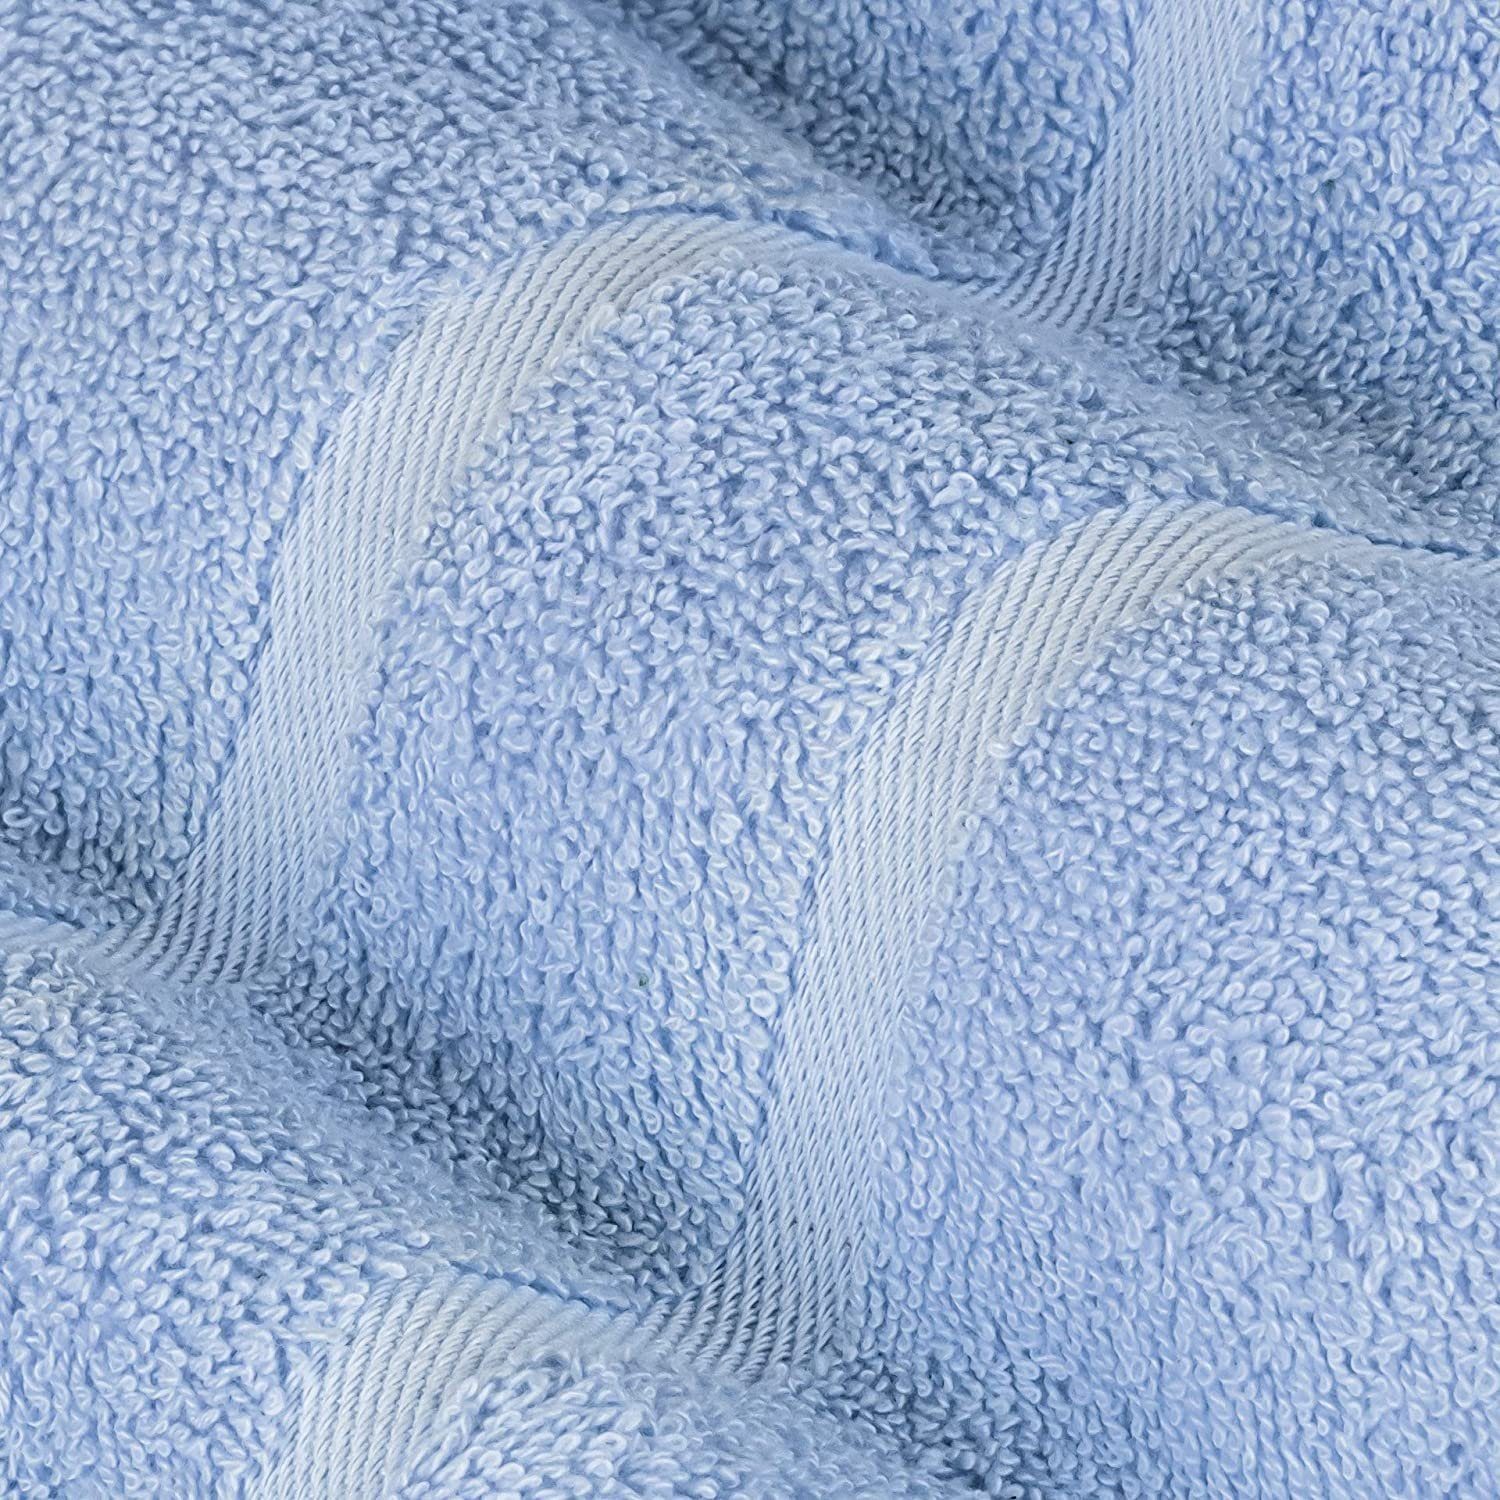 StickandShine Handtuch 2er Set (2 100% in Baumwolle 100% Handtuch 500GSM Frottee Frottee cm 500g/m² 50x100 Stück), Hellblau Baumwolle Premium aus